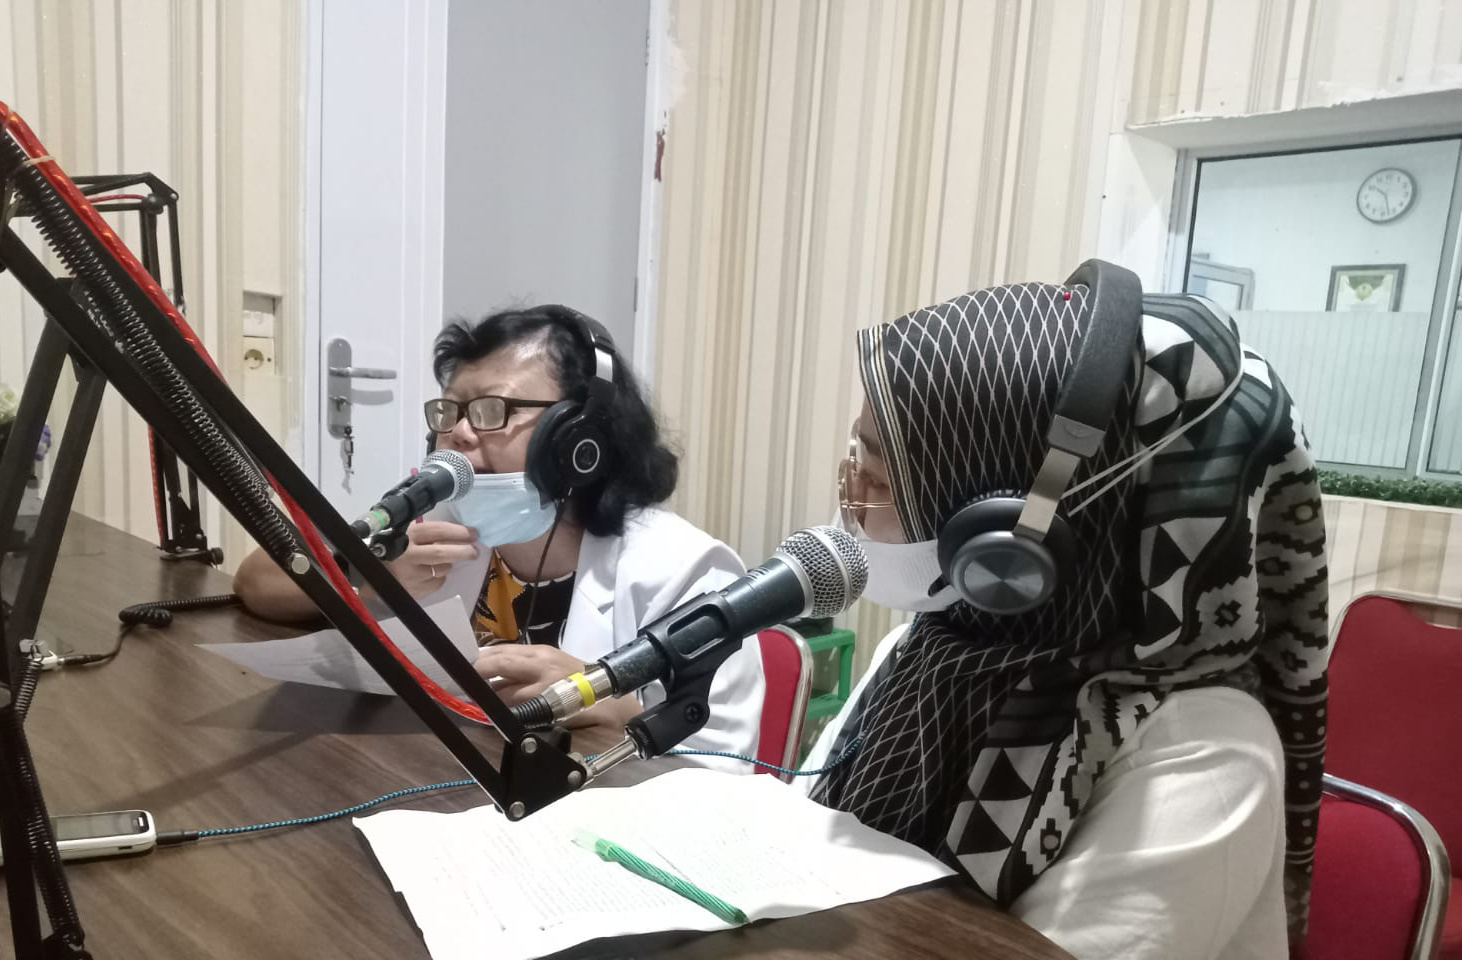 Bincang Santai tentang Dampak Negatif Narkoba di Radio Gemilang FM